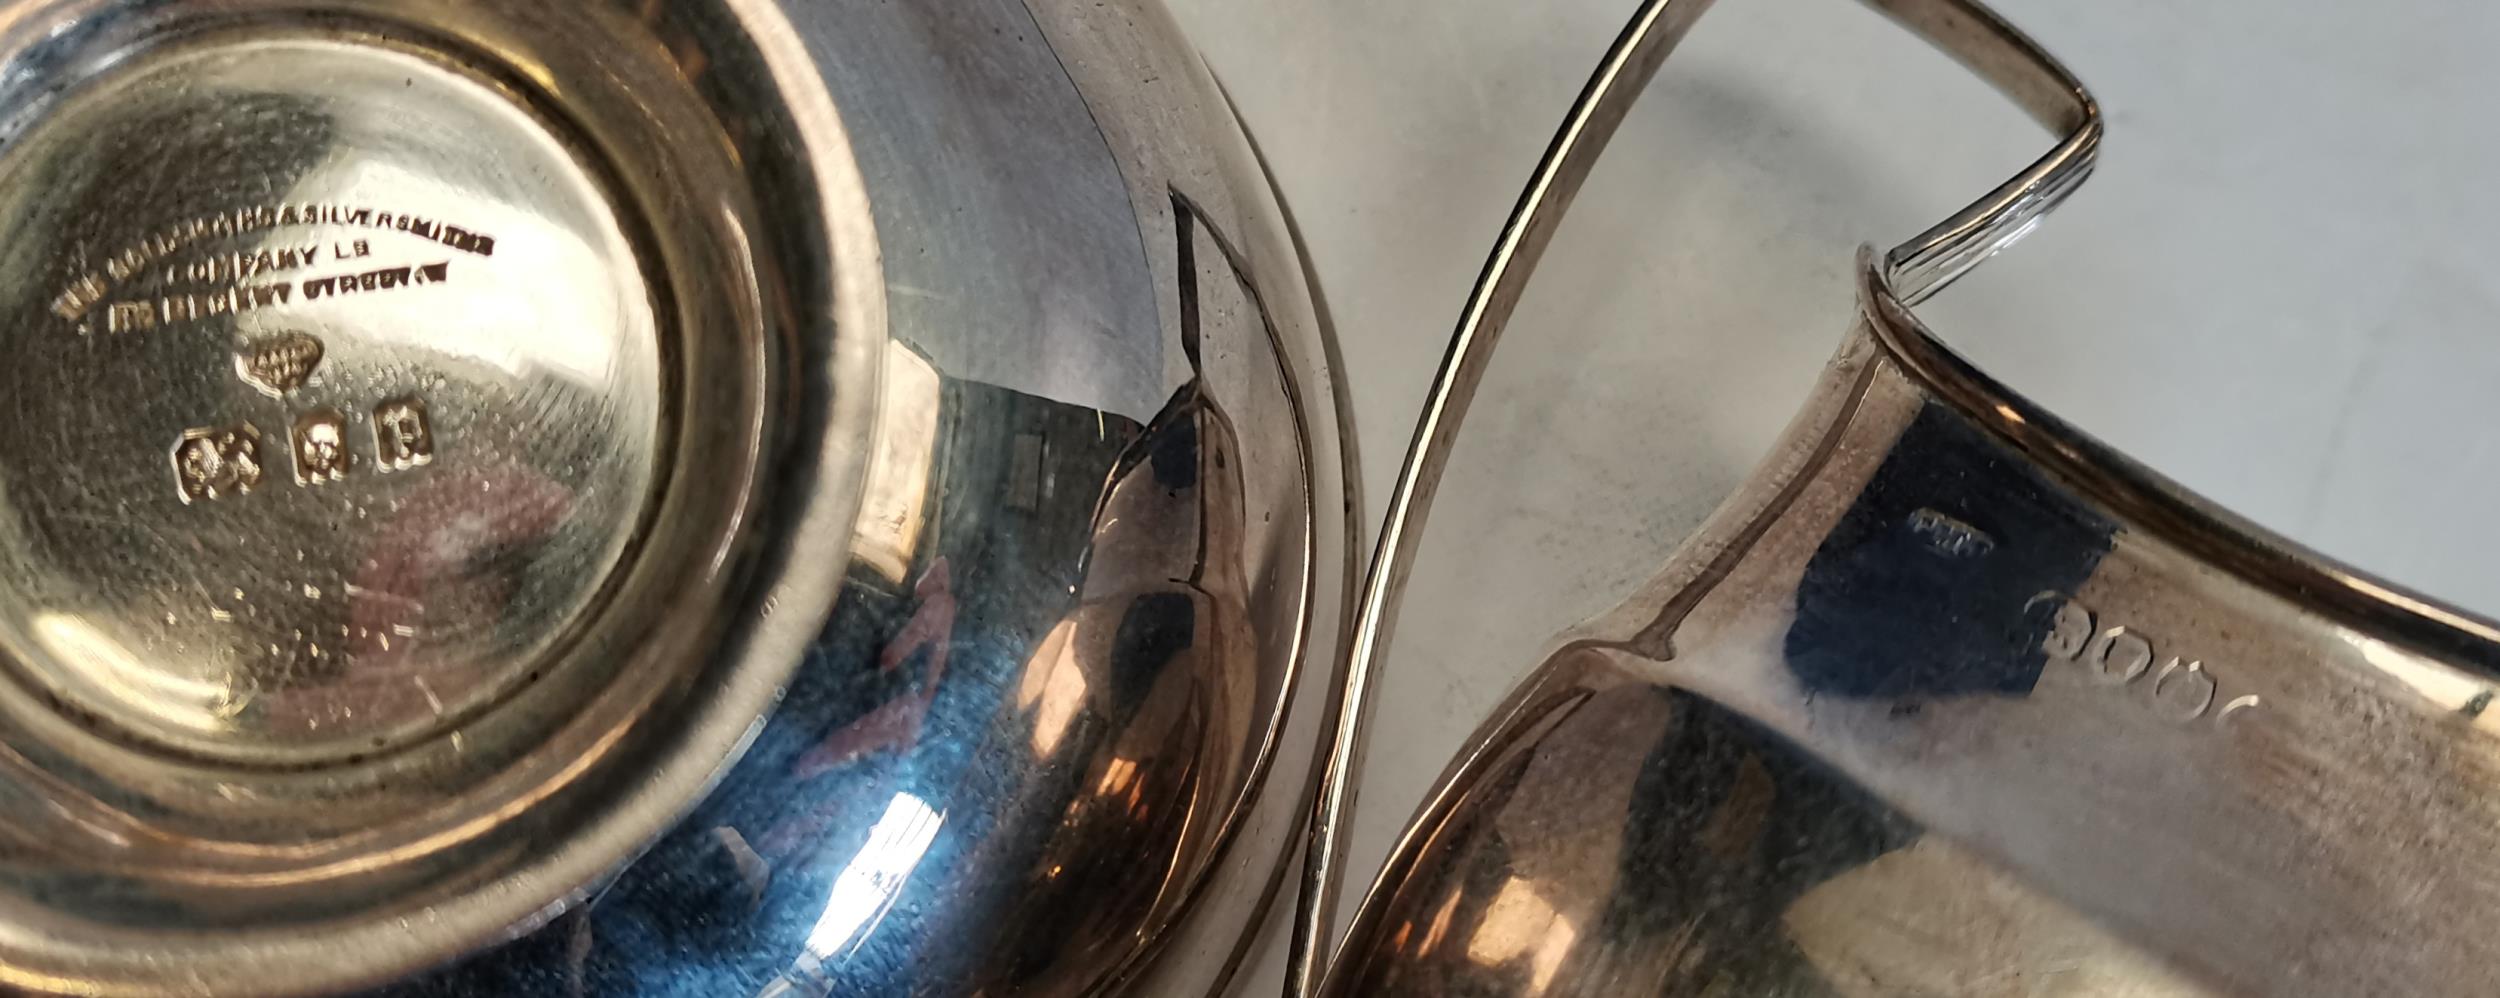 London Silver jug and bowl - Image 3 of 4